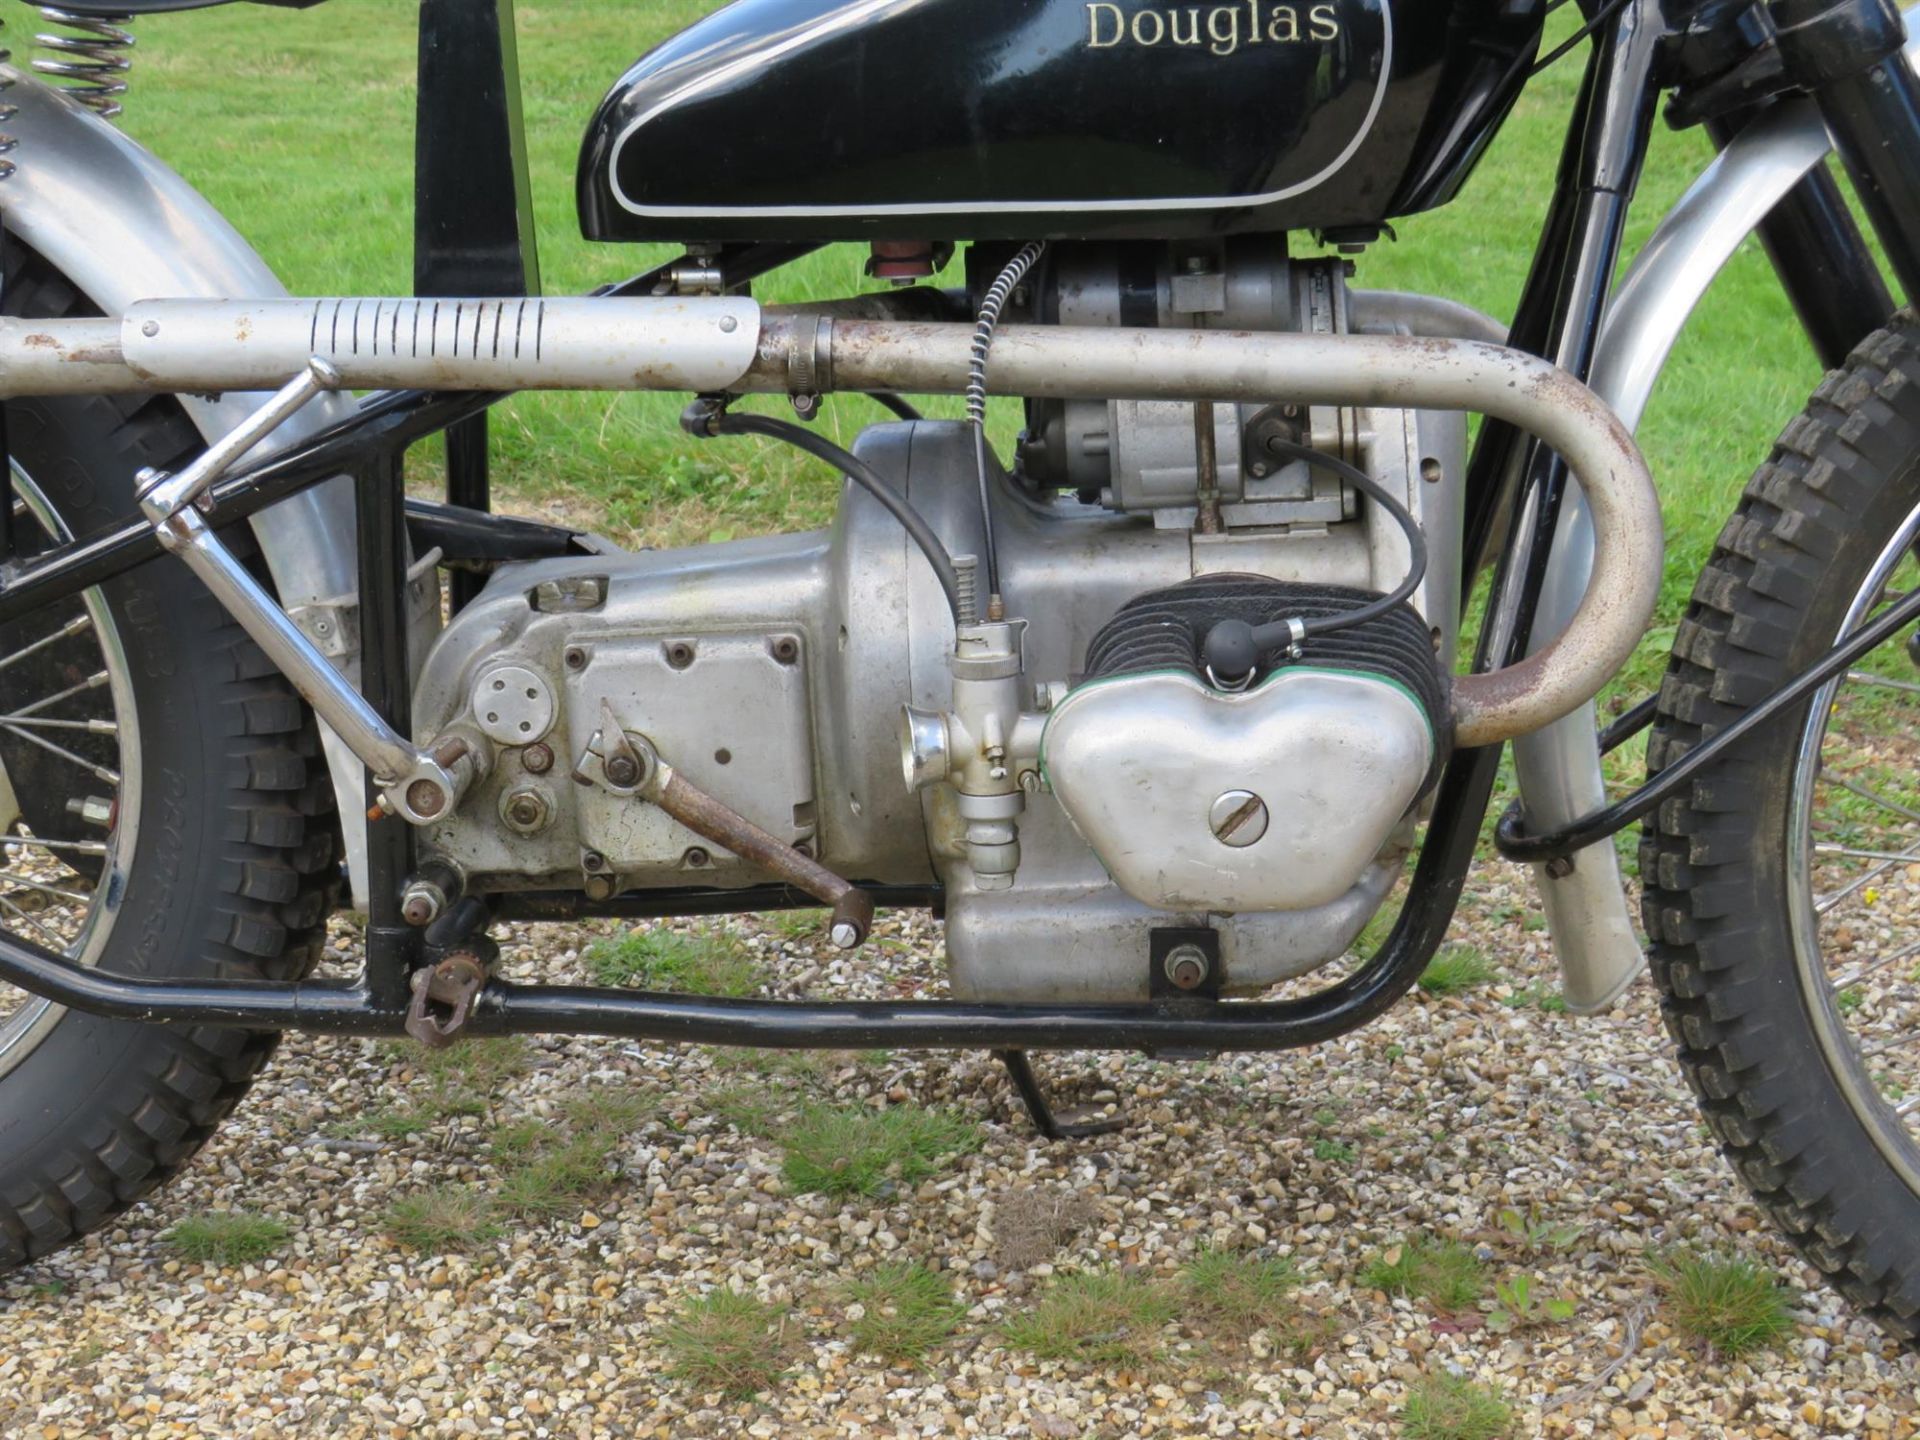 1950 Douglas 350 Trials Replica 348cc - Image 3 of 10